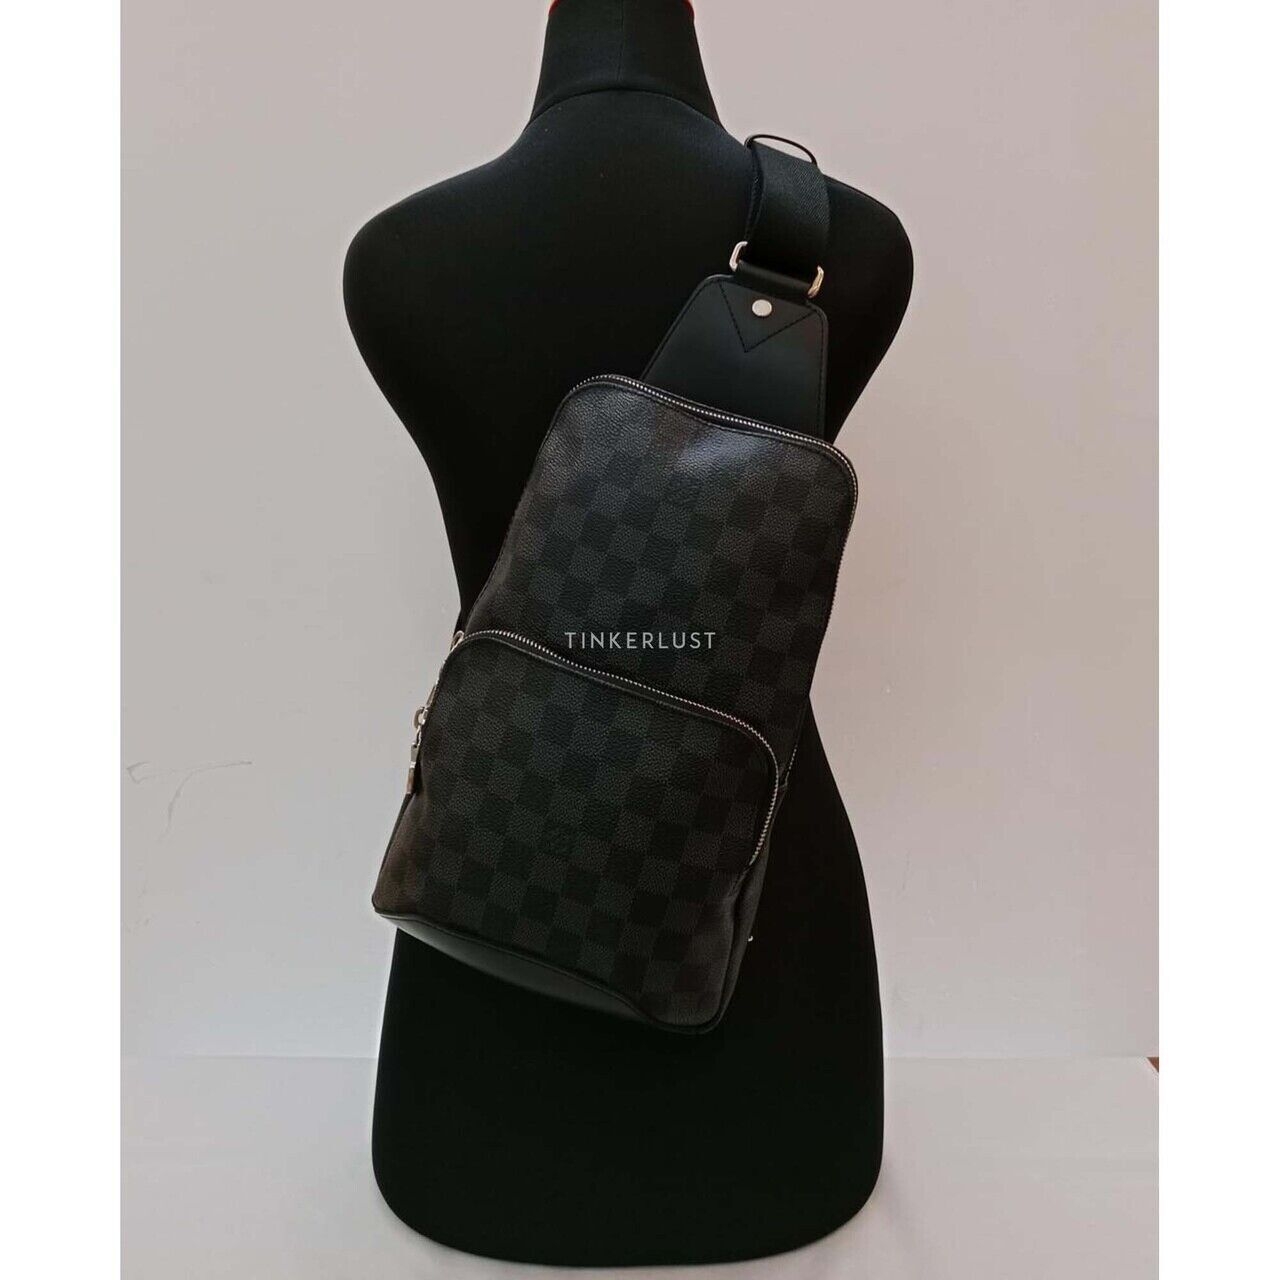 Louis Vuitton Bumbag Damier Graphite 2018 Sling Bag